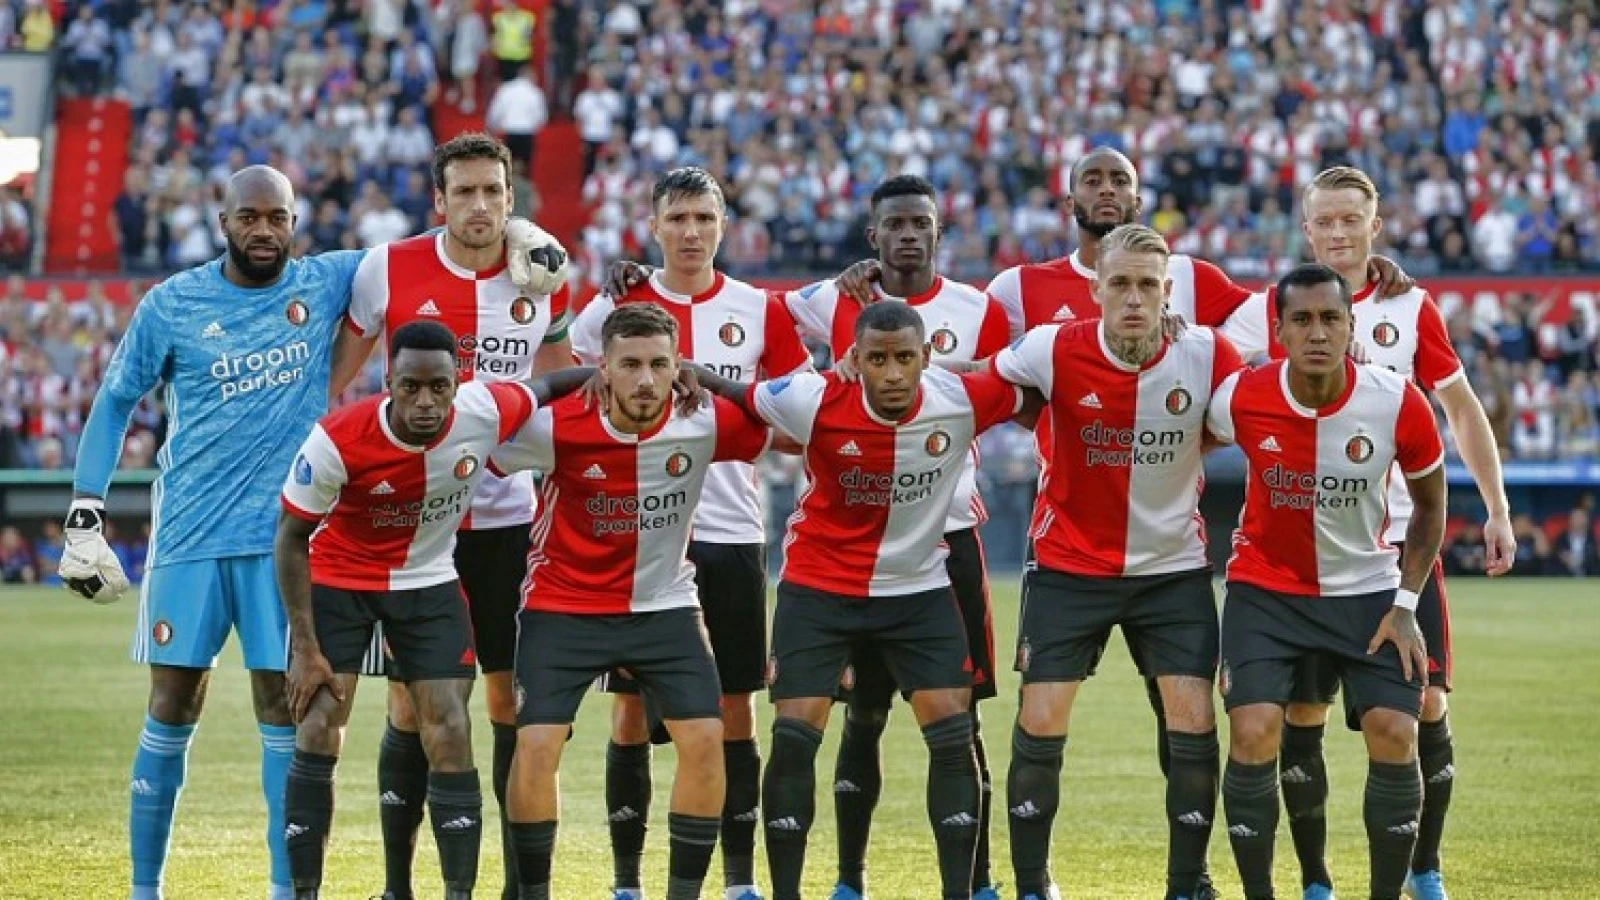 Keiharde tussenconclusie: 'Feyenoordselectie is kwaliteitsarm en niet fit genoeg'